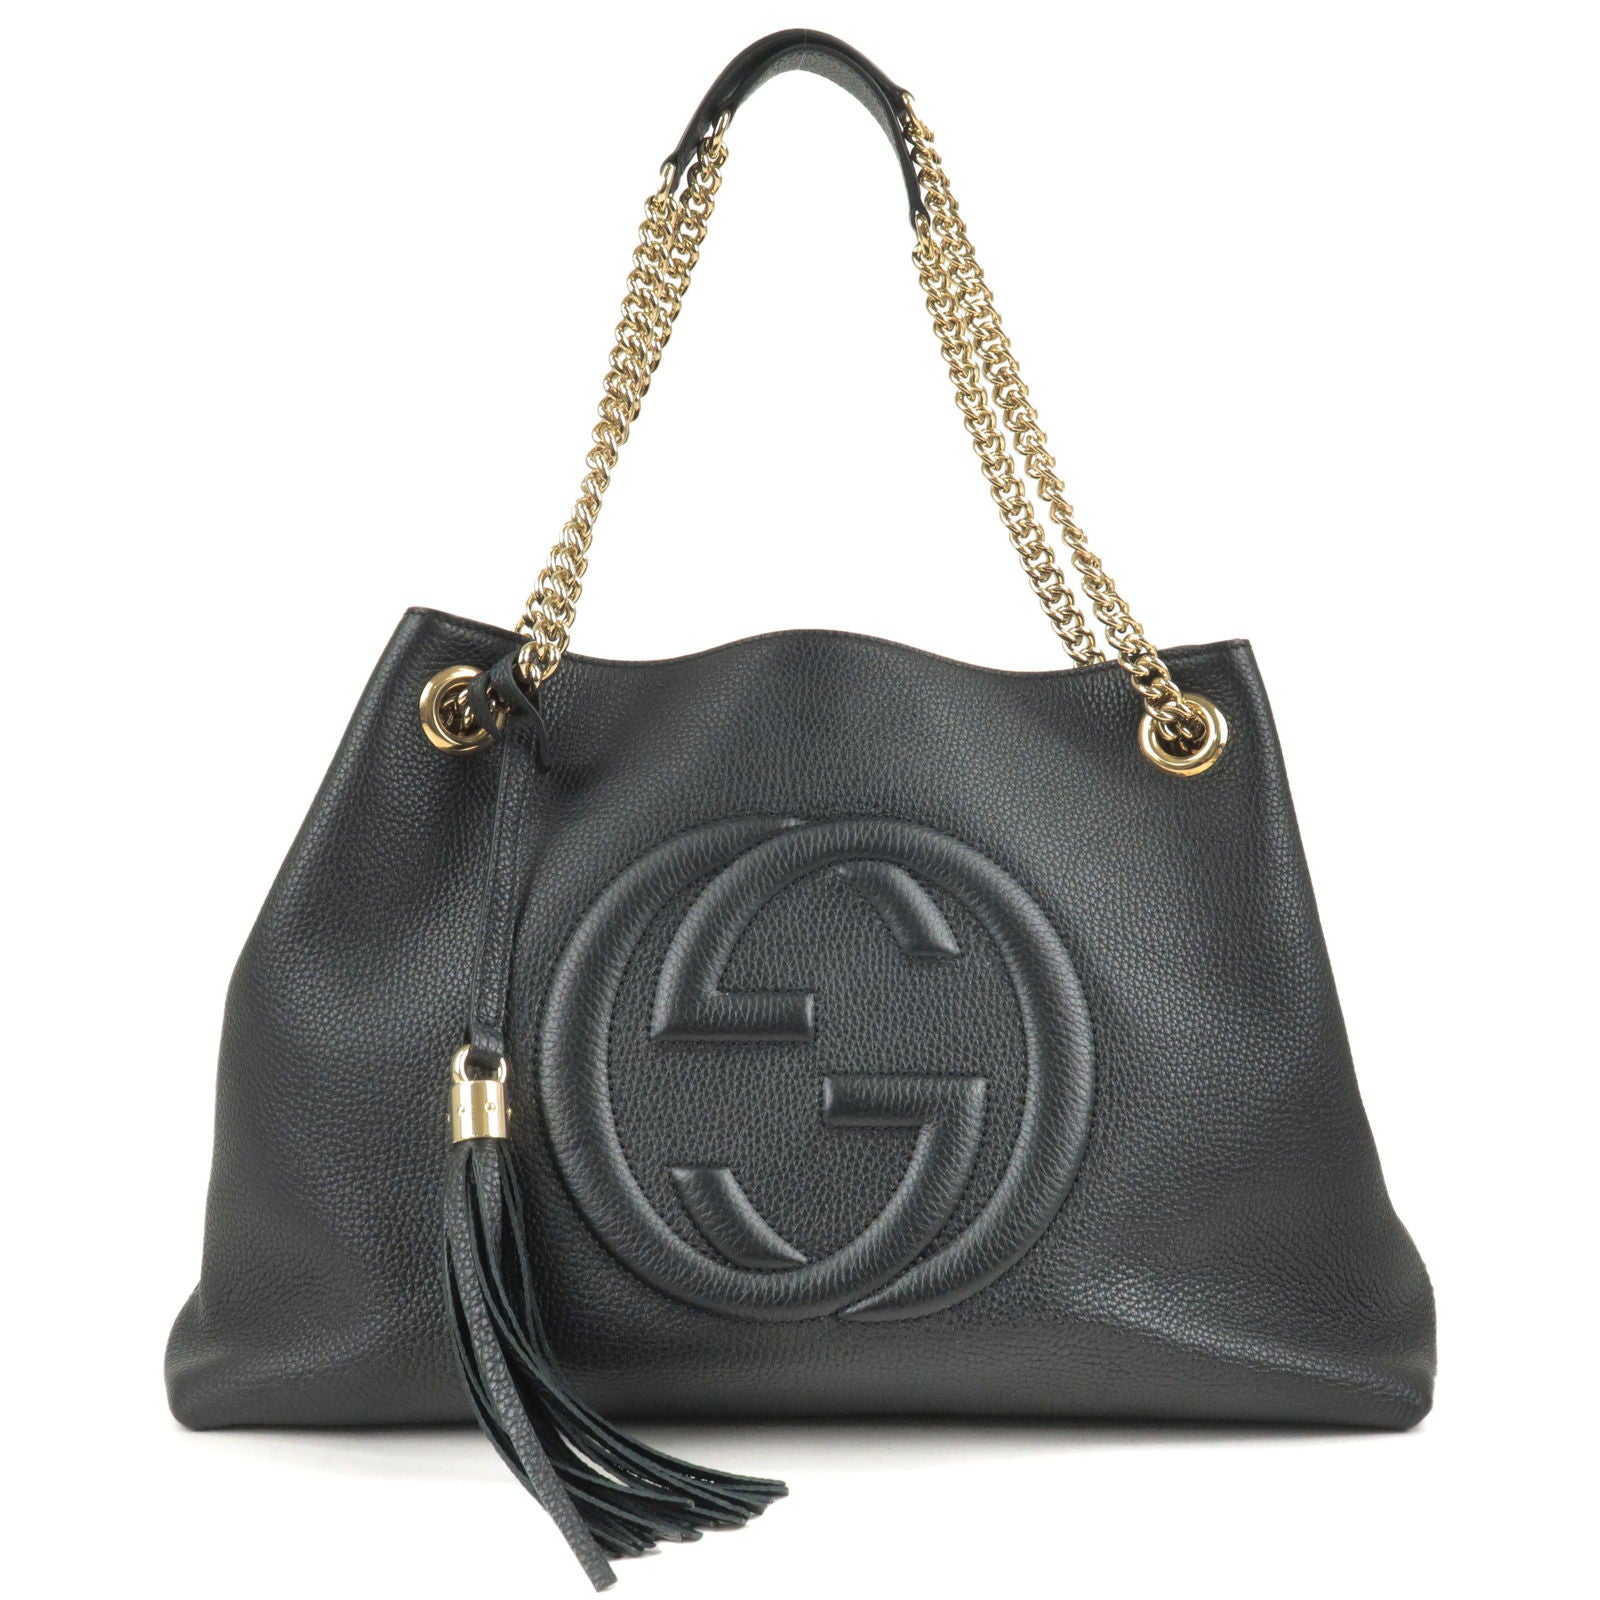 GUCCI-SOHO-Logo-Leather-Chain-Shoulder-Bag-Tote-Bag-Black-536196